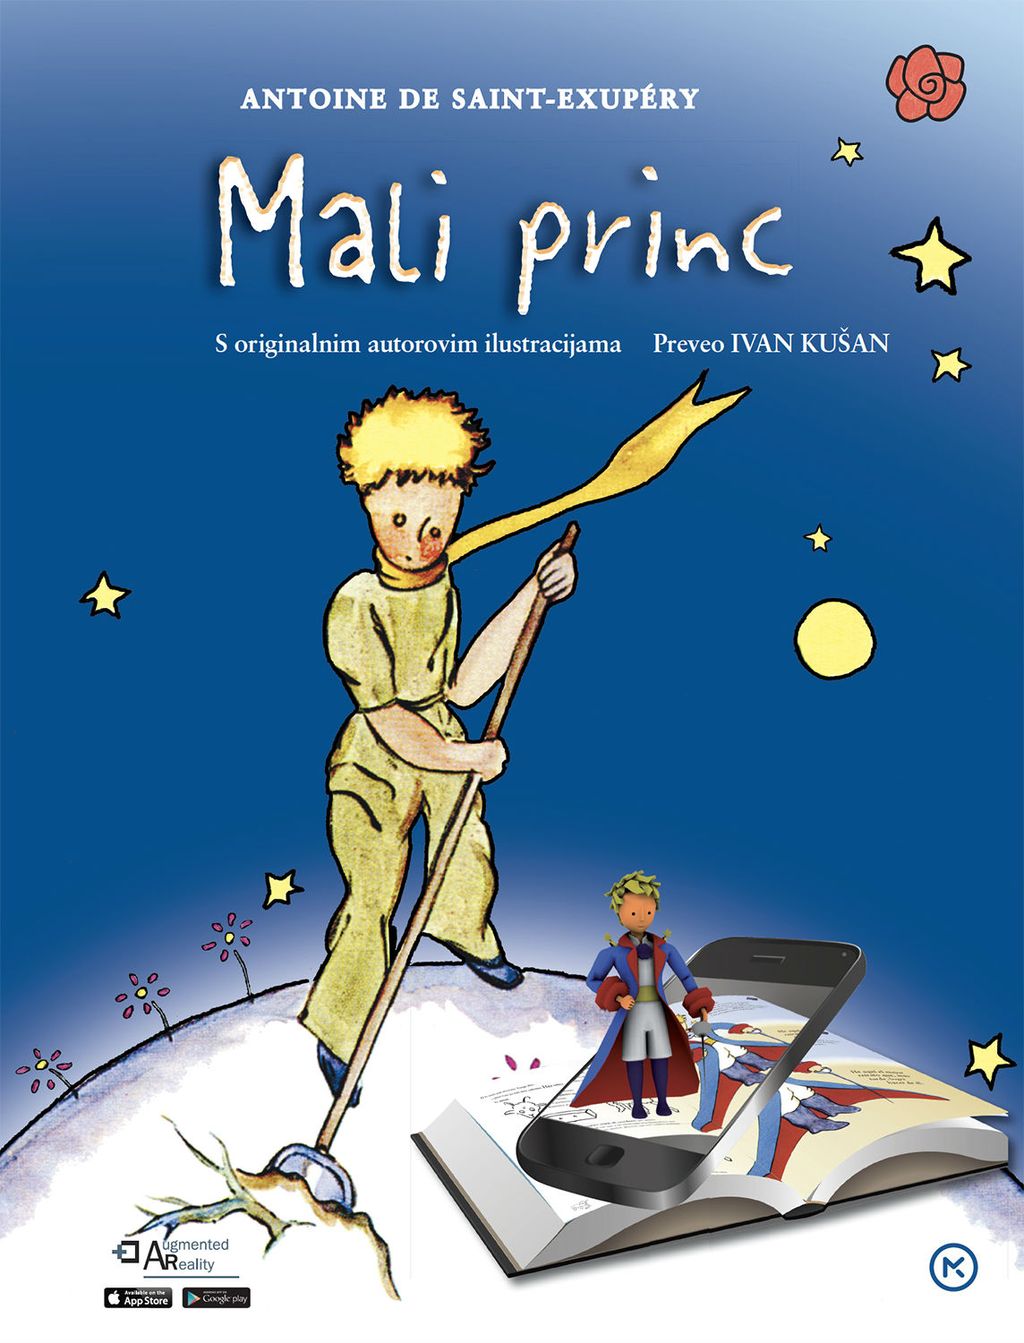 Knjiga \'Mali princ\' dobila je potpuno novu, još uzbudljiviju dimenziju